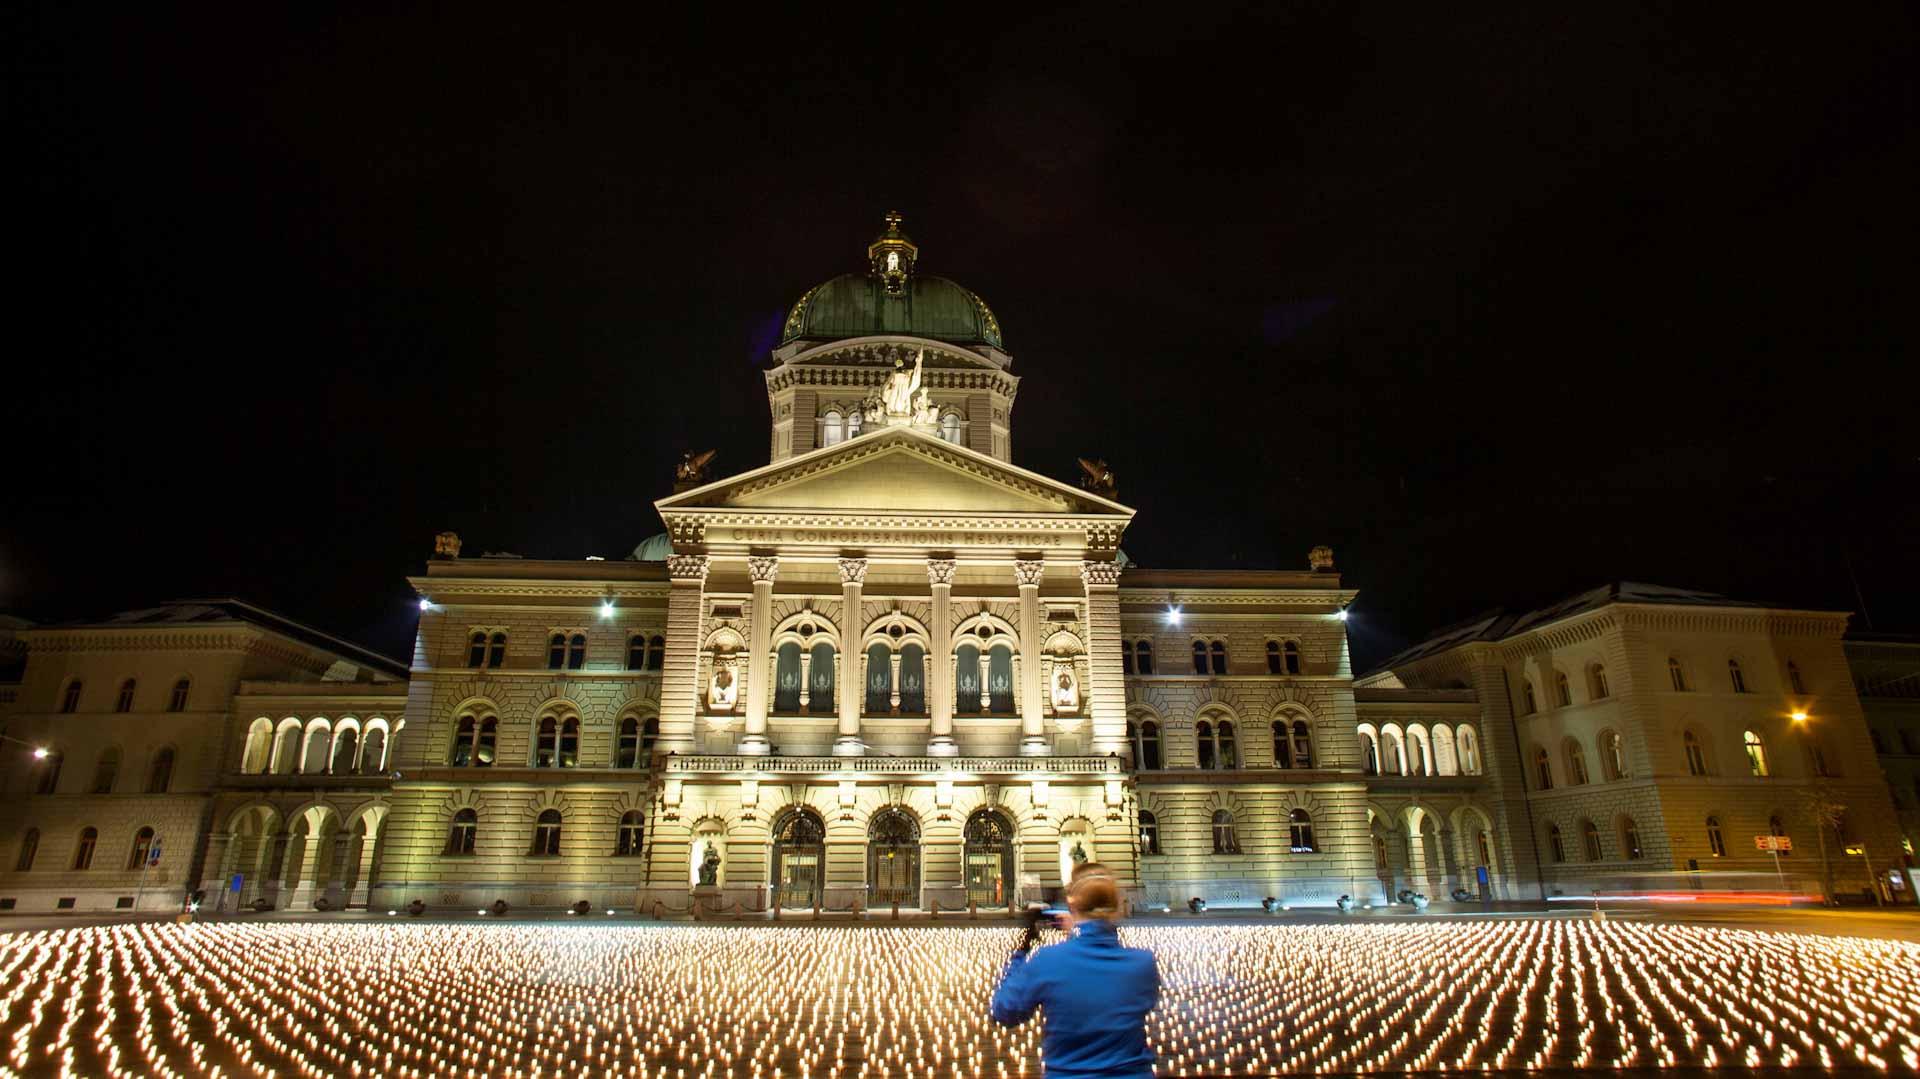 Upaljeno više od 11.000 svijeća za žrtve koronavirusa u Bernu